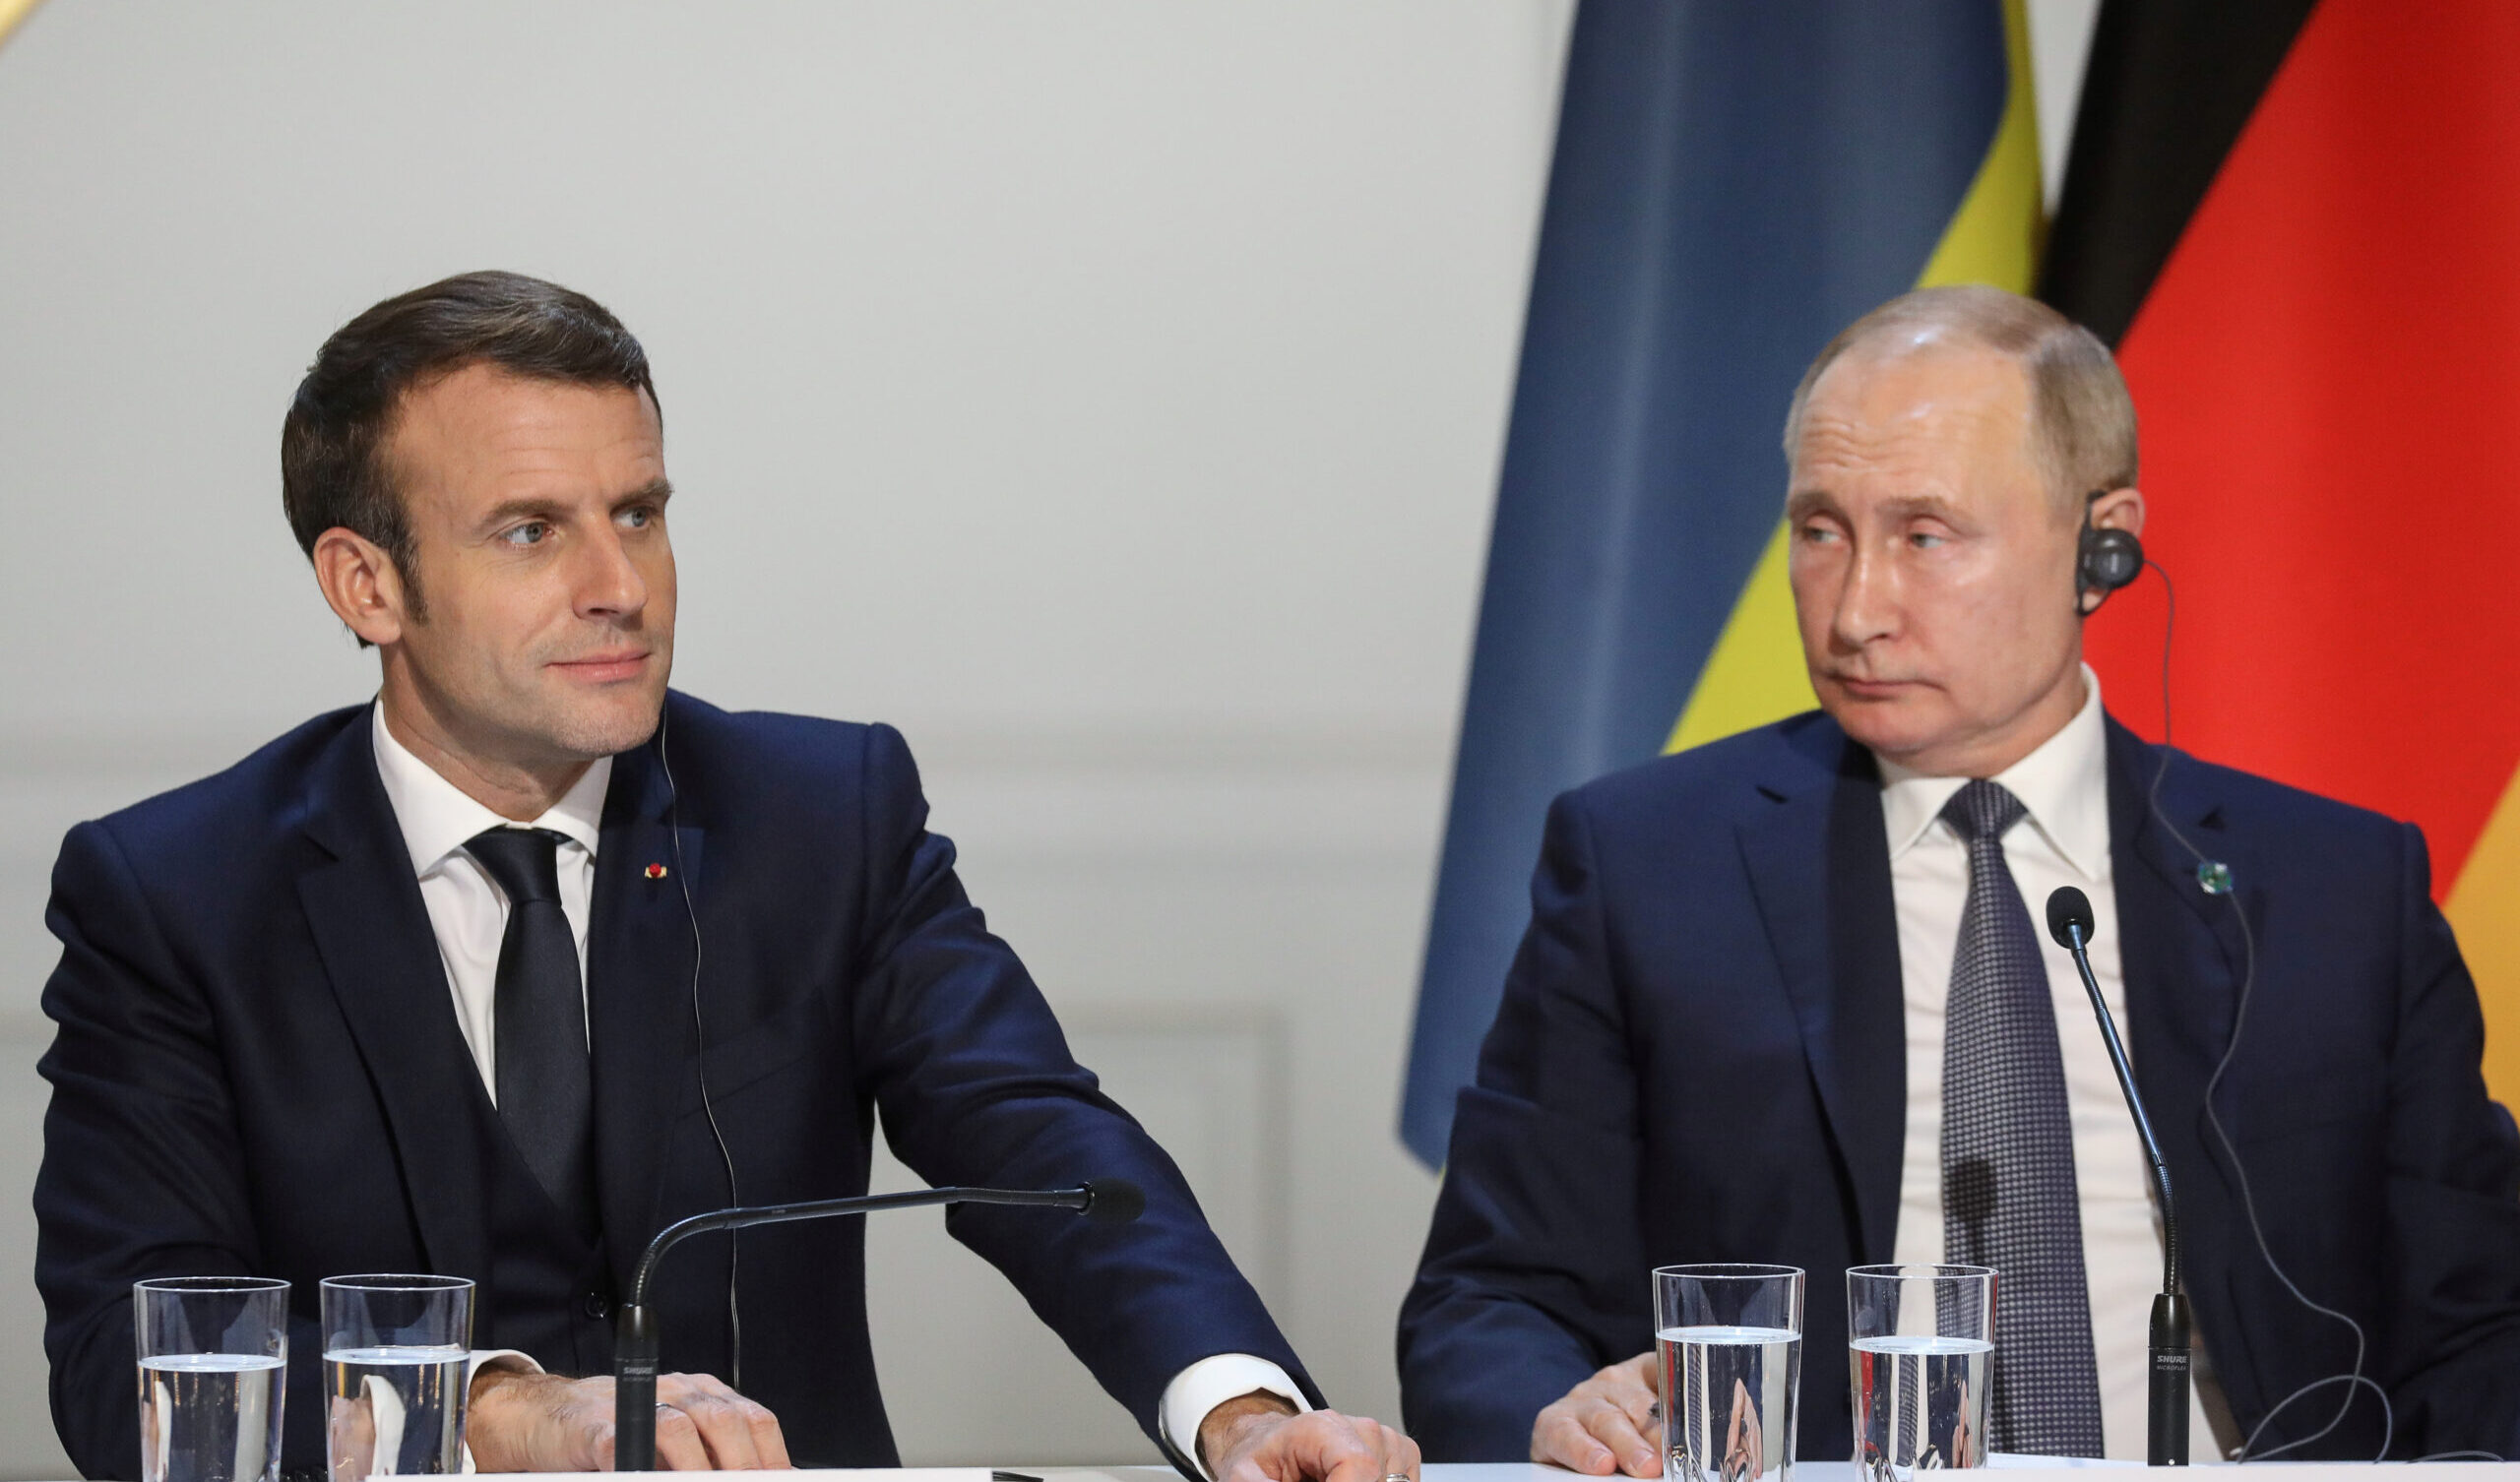 La Francia denuncia una campagna di disinformazione russa contro Parigi basata su informazioni false